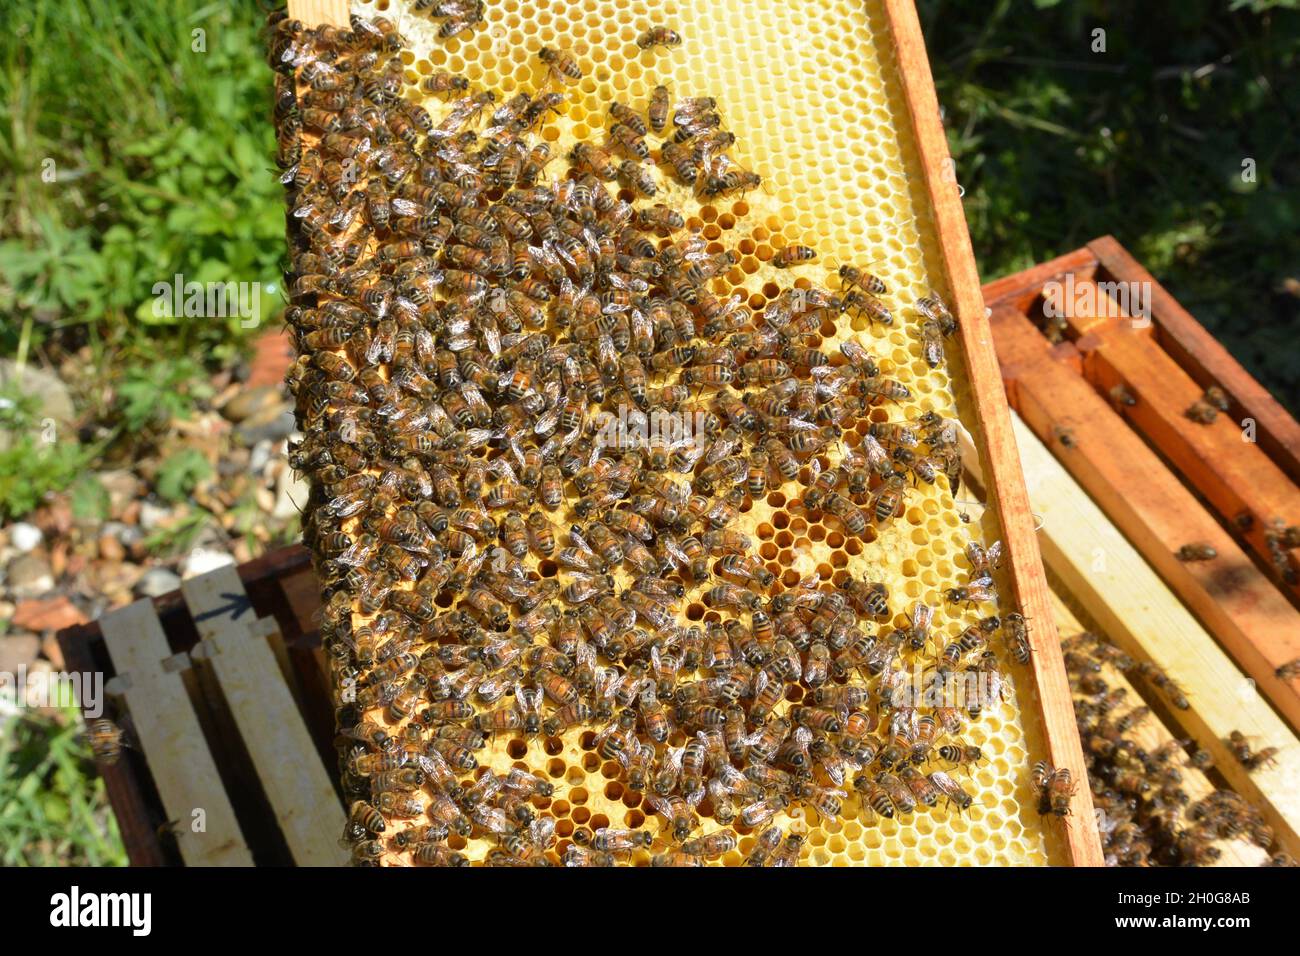 Retrait d'un cadre recouvert d'abeille d'une ruche.Abeilles domestiques (APIs mellifera) sur le nid d'abeilles et autour de la ruche Banque D'Images